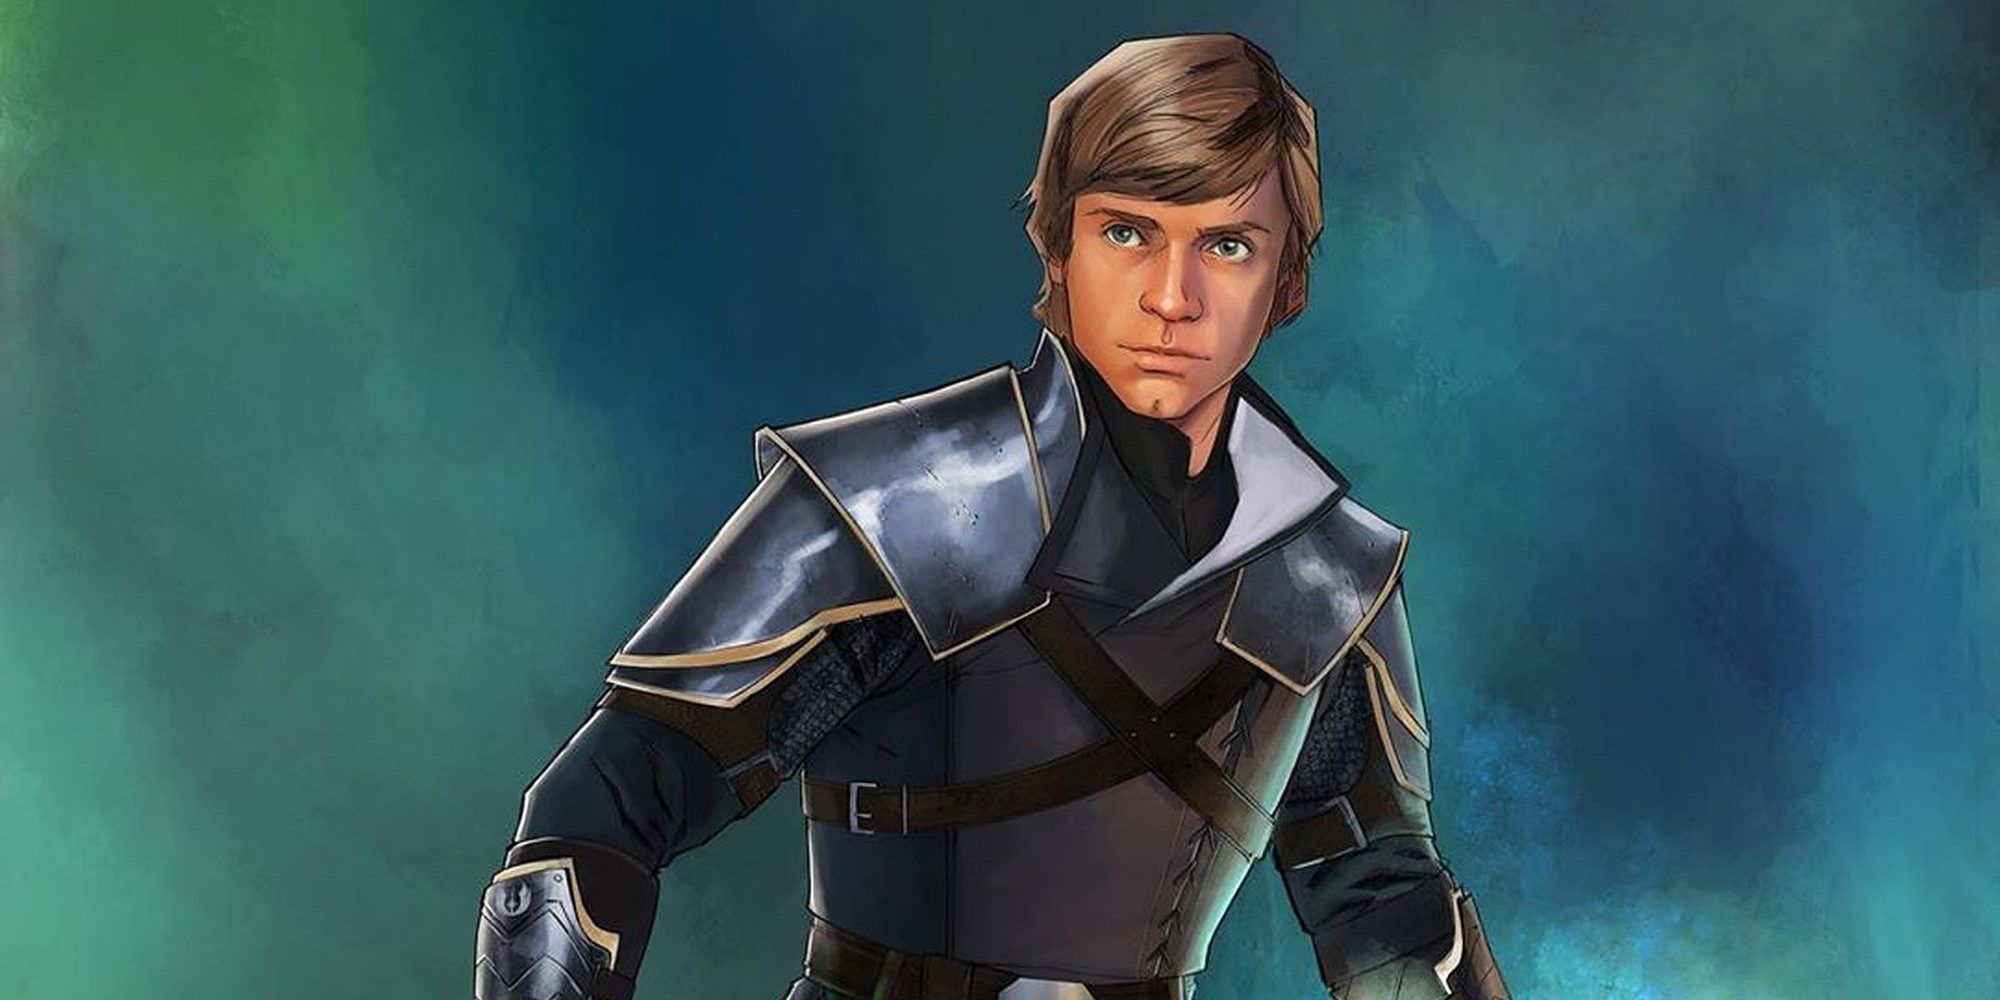 Medieval Luke Skywalker Wields Excalibur Lightsaber In Star Wars Fan Art